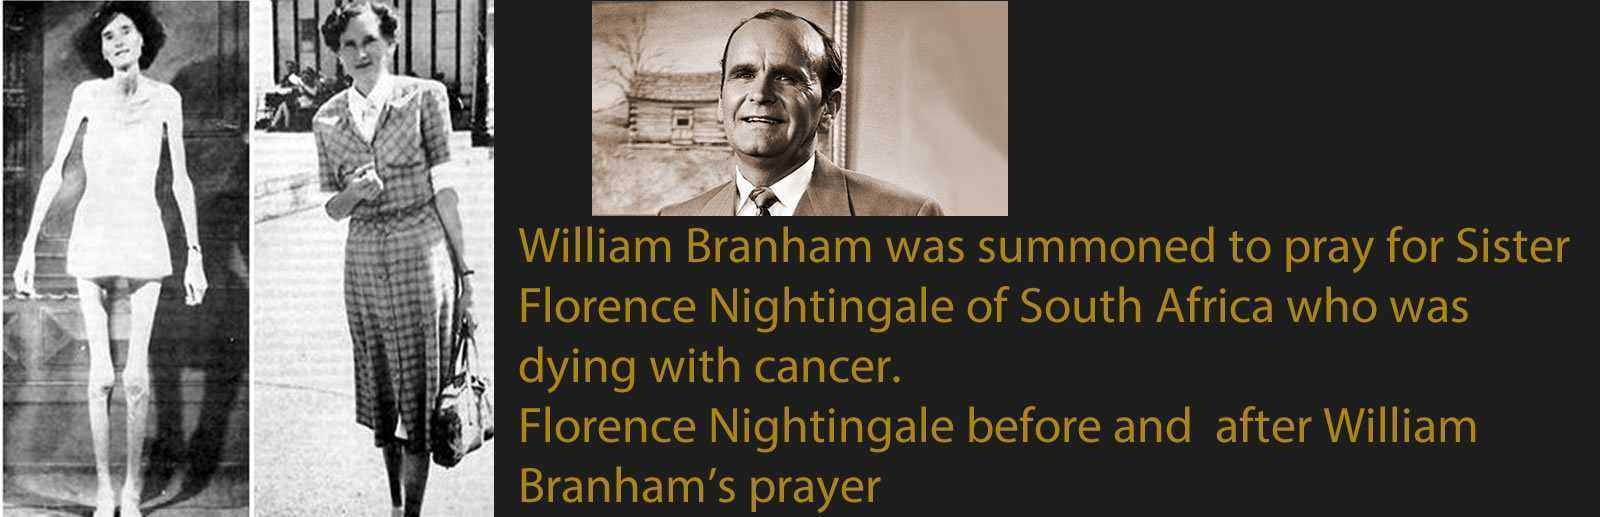 William Branham - Healing from Cancer